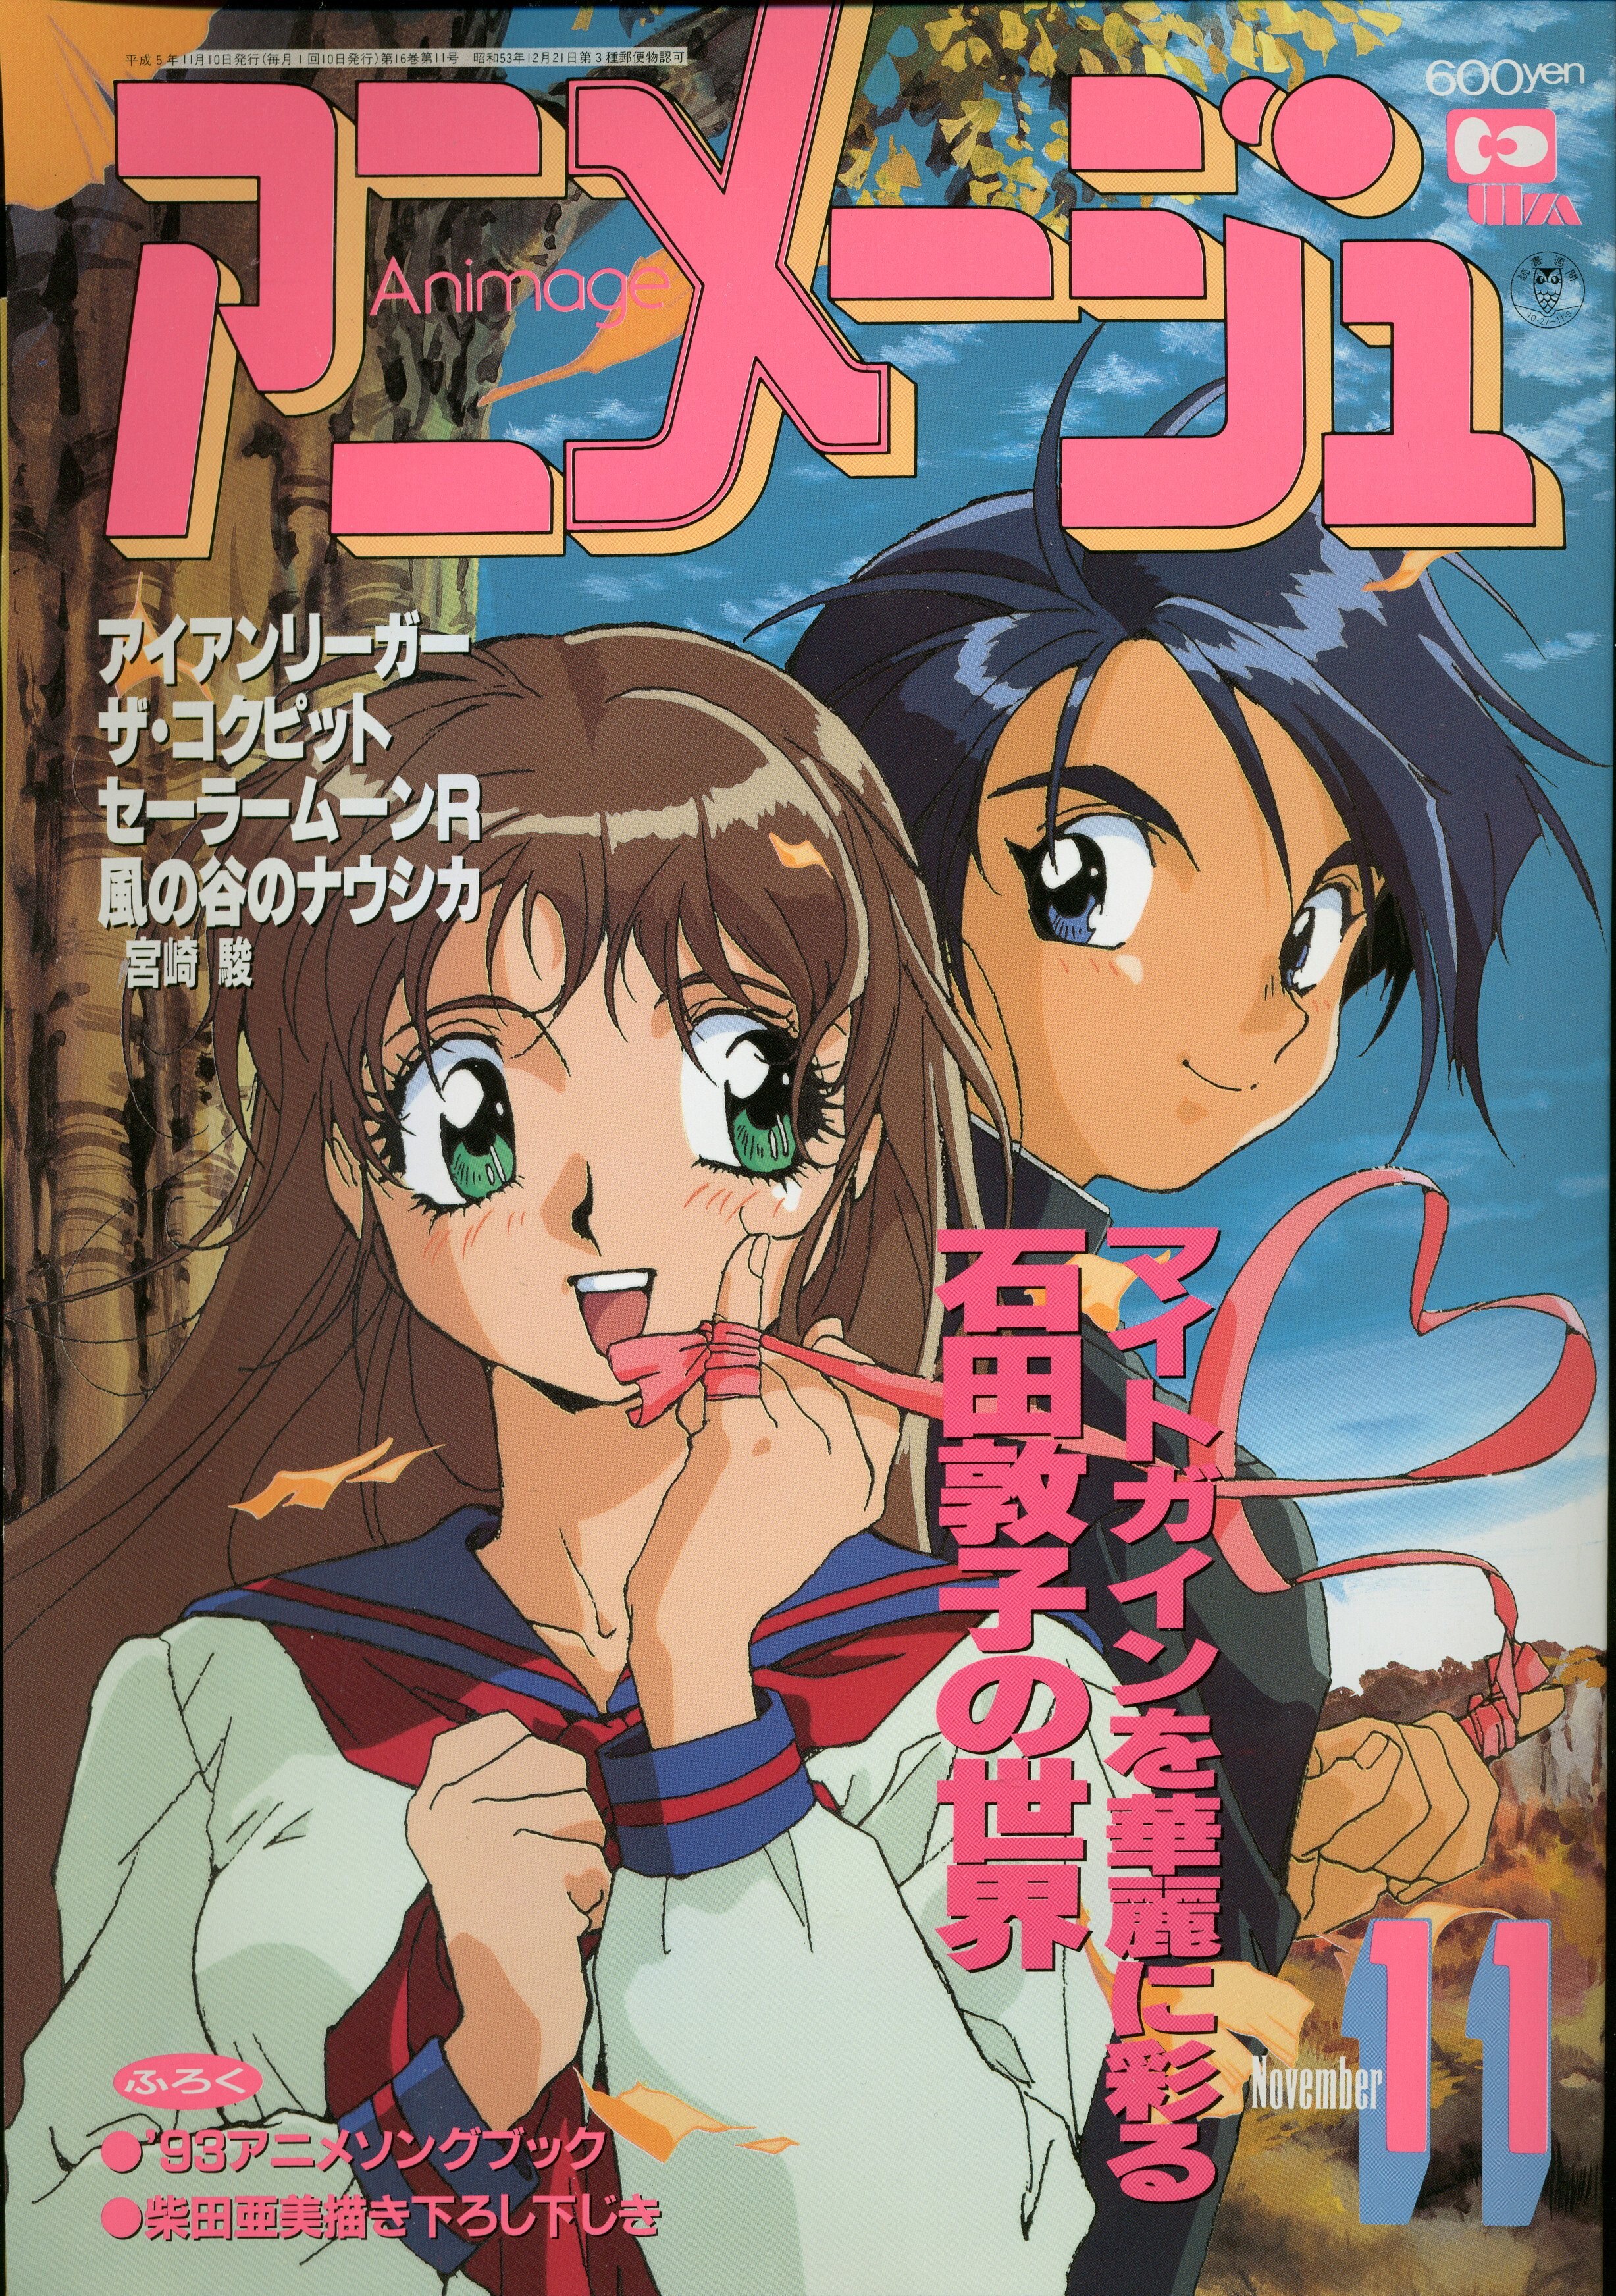 徳間書店 1993年 平成5年 のアニメ雑誌 付録つき アニメージュ1993年 平成5年 11月号 185 まんだらけ Mandarake